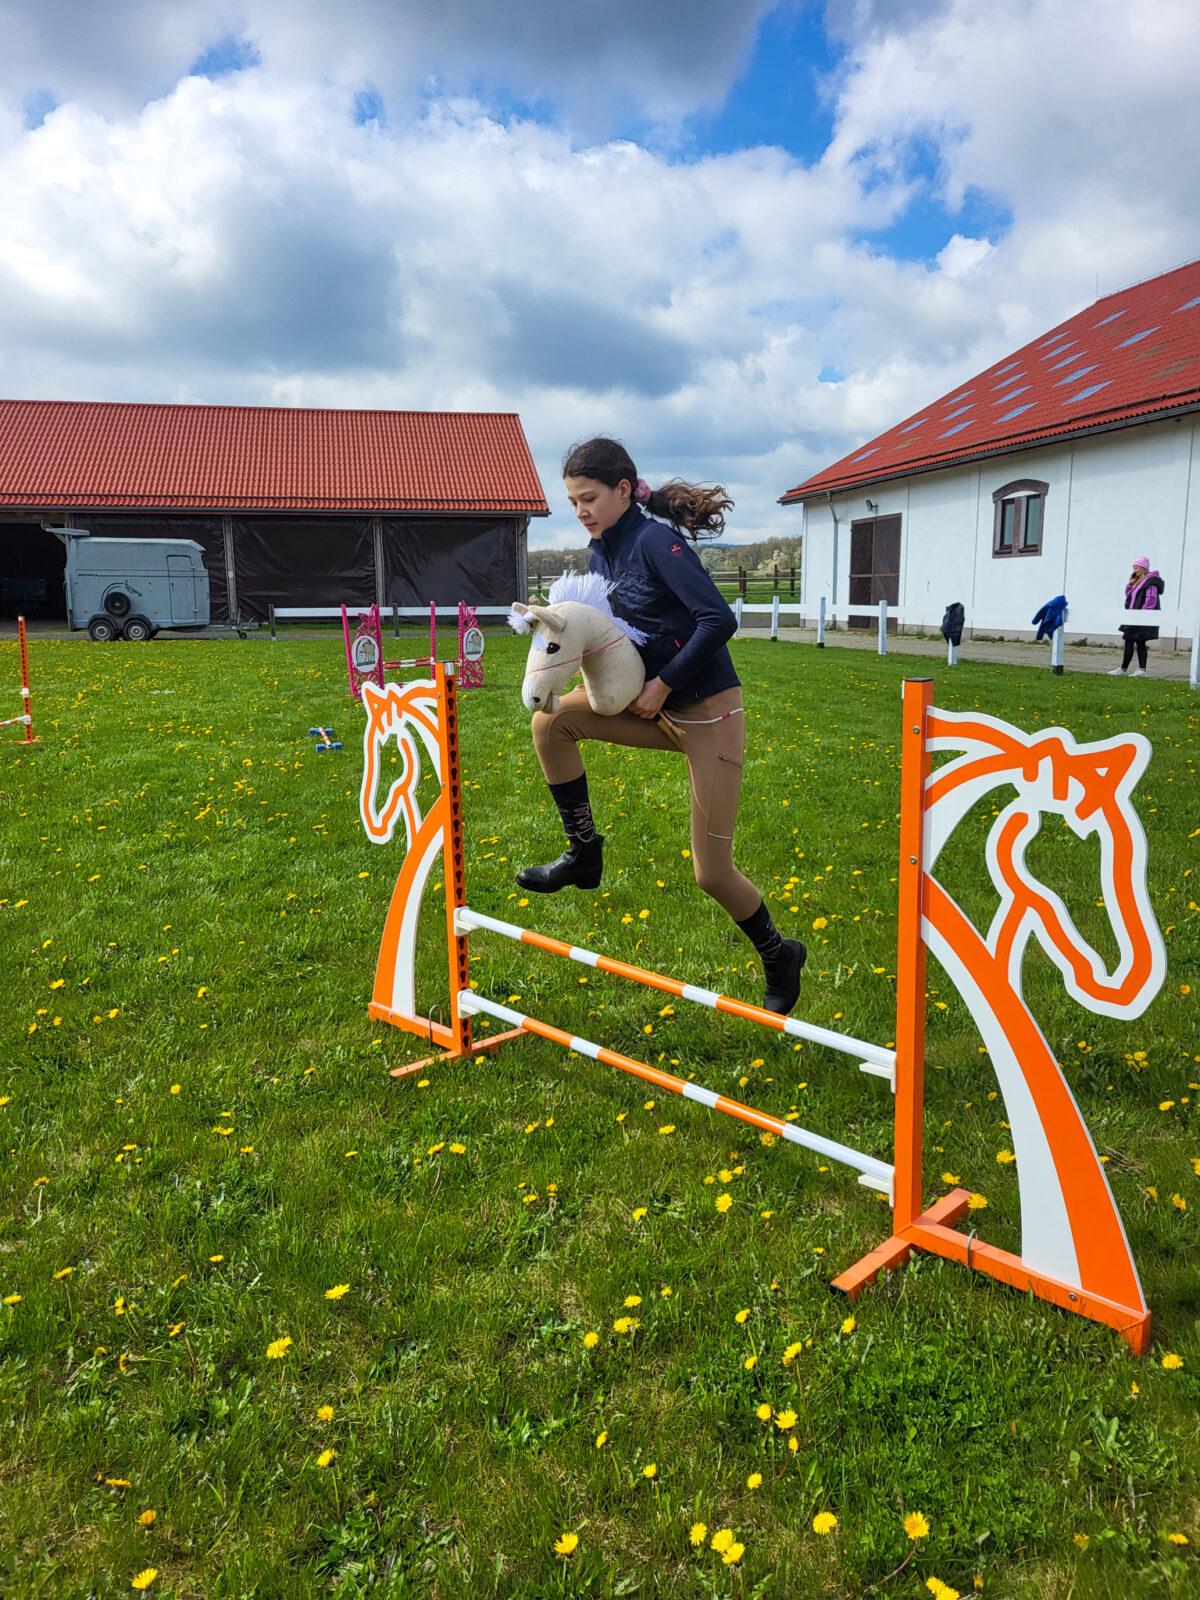 dziewczynka skacze przez przeszkodę na hobby horse